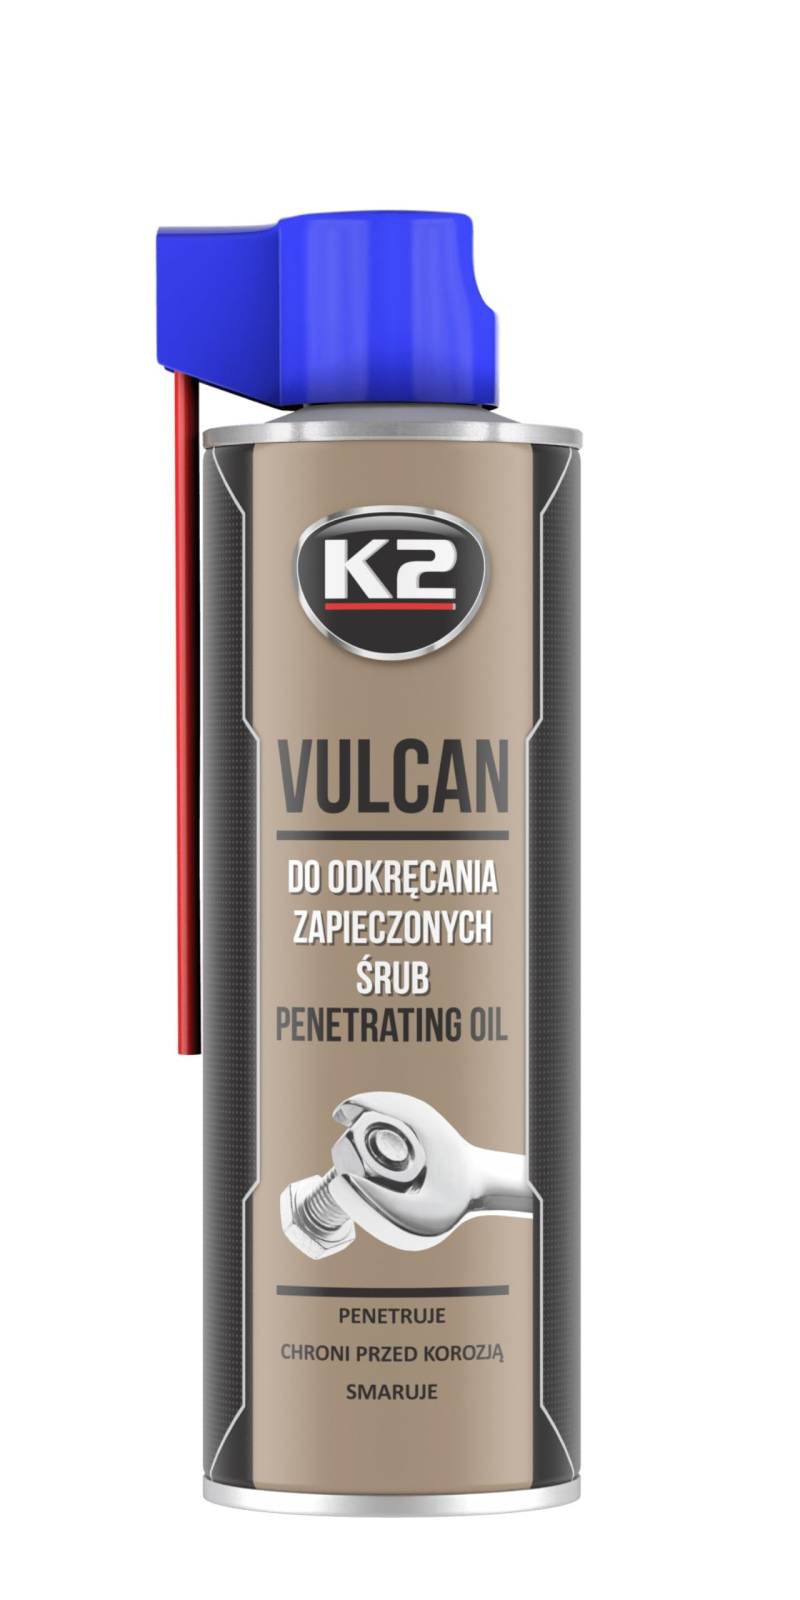 K2 | Vulcan Schraubenlöser, Rostlöser, Rostentferner, löst Schrauben, Spray 500ml von K2